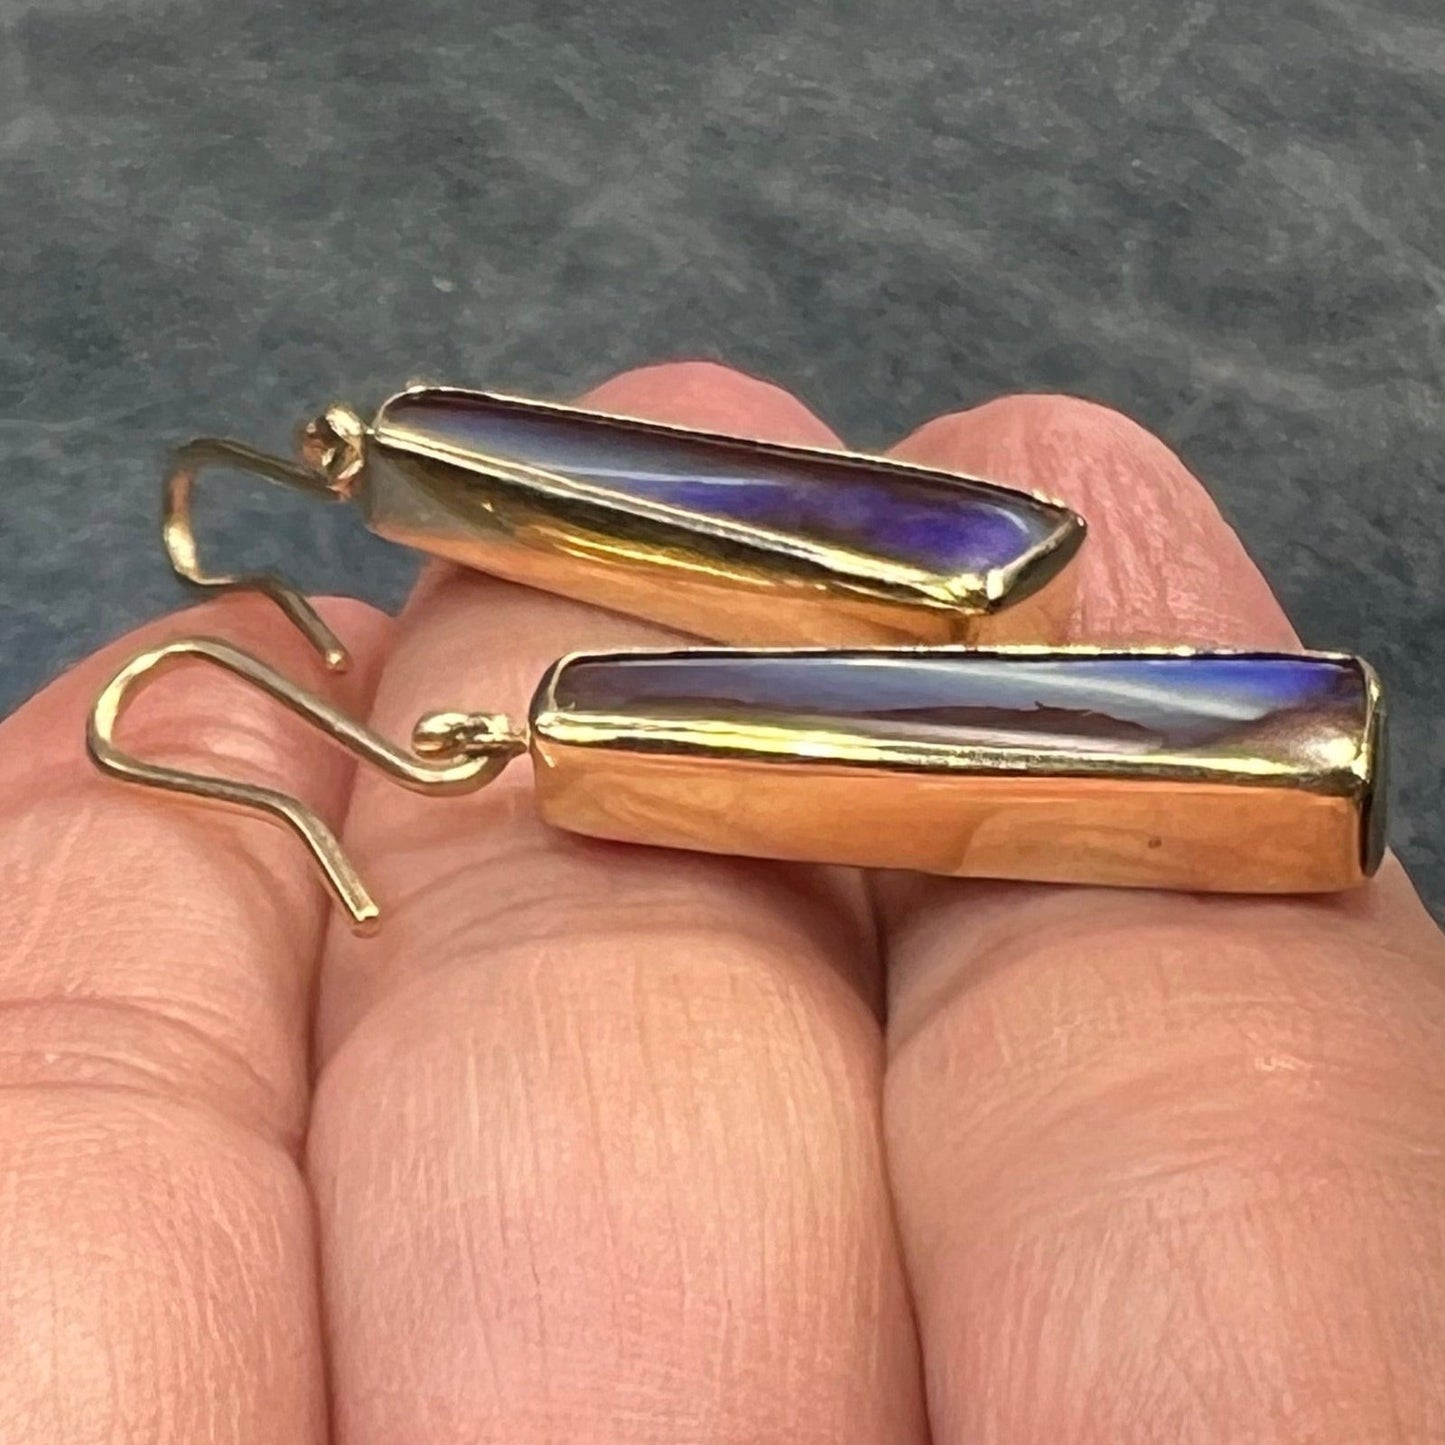 14k Gold Australian Boulder Opal Leverback Earrings. Designer *Video*